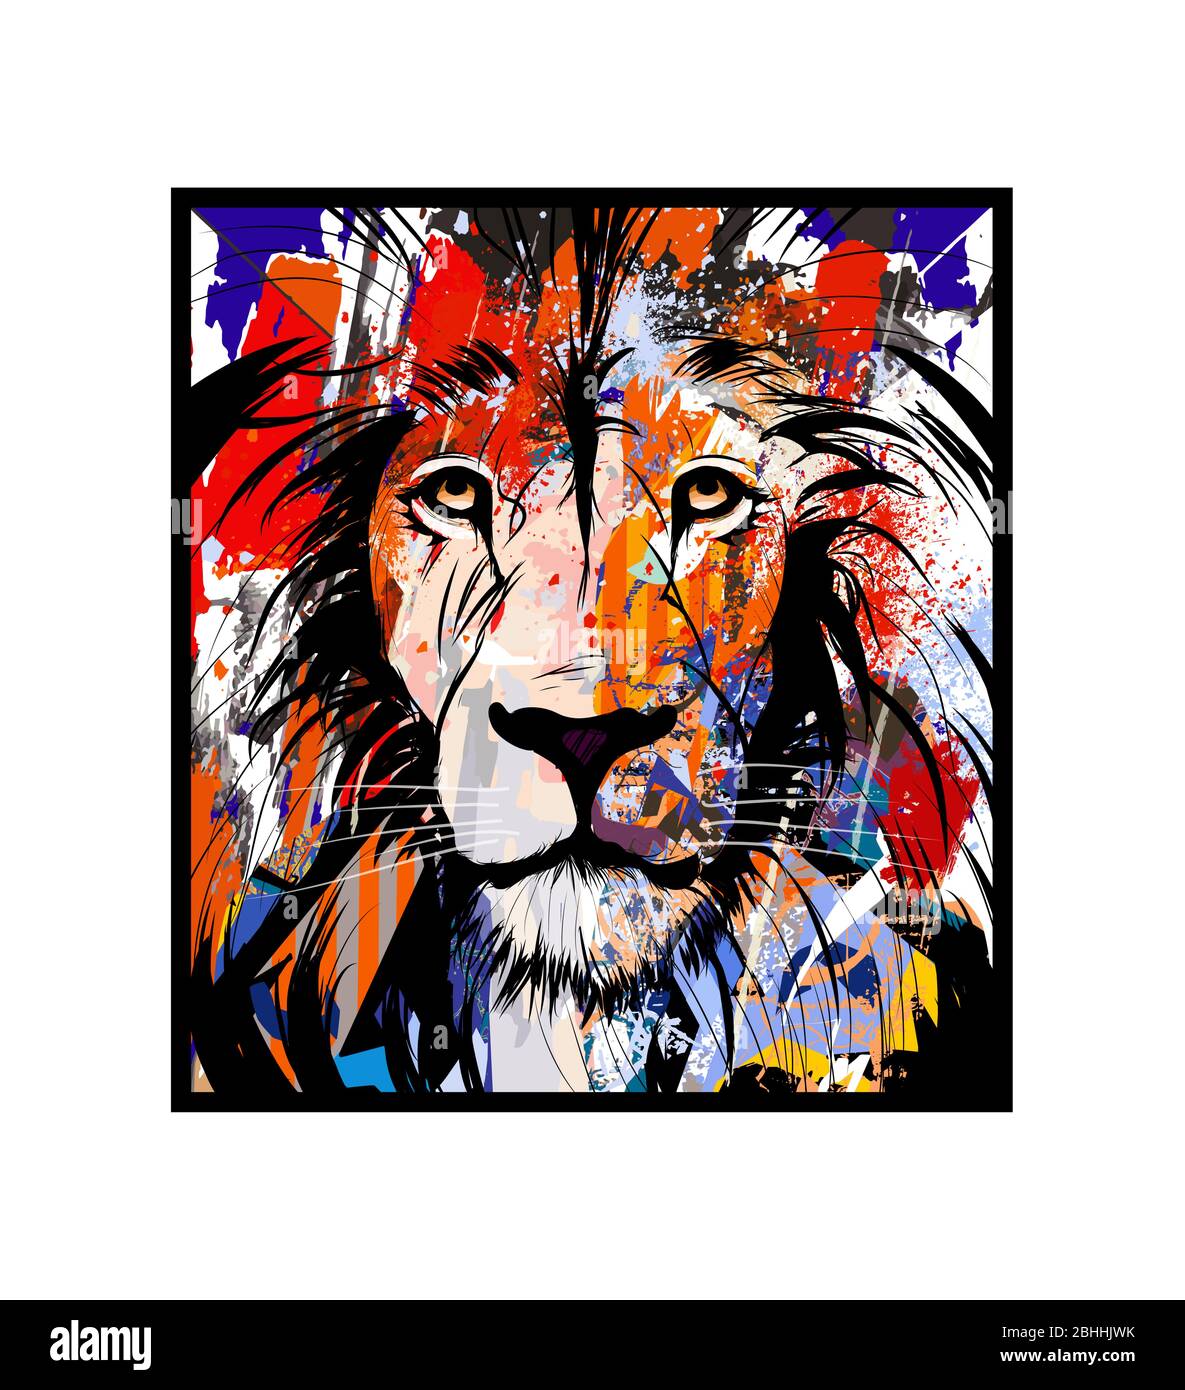 Ritratto colorato di un leone - illustrazione vettoriale (ideale per la stampa su tessuto o carta, poster o carta da parati, decorazione della casa) Illustrazione Vettoriale